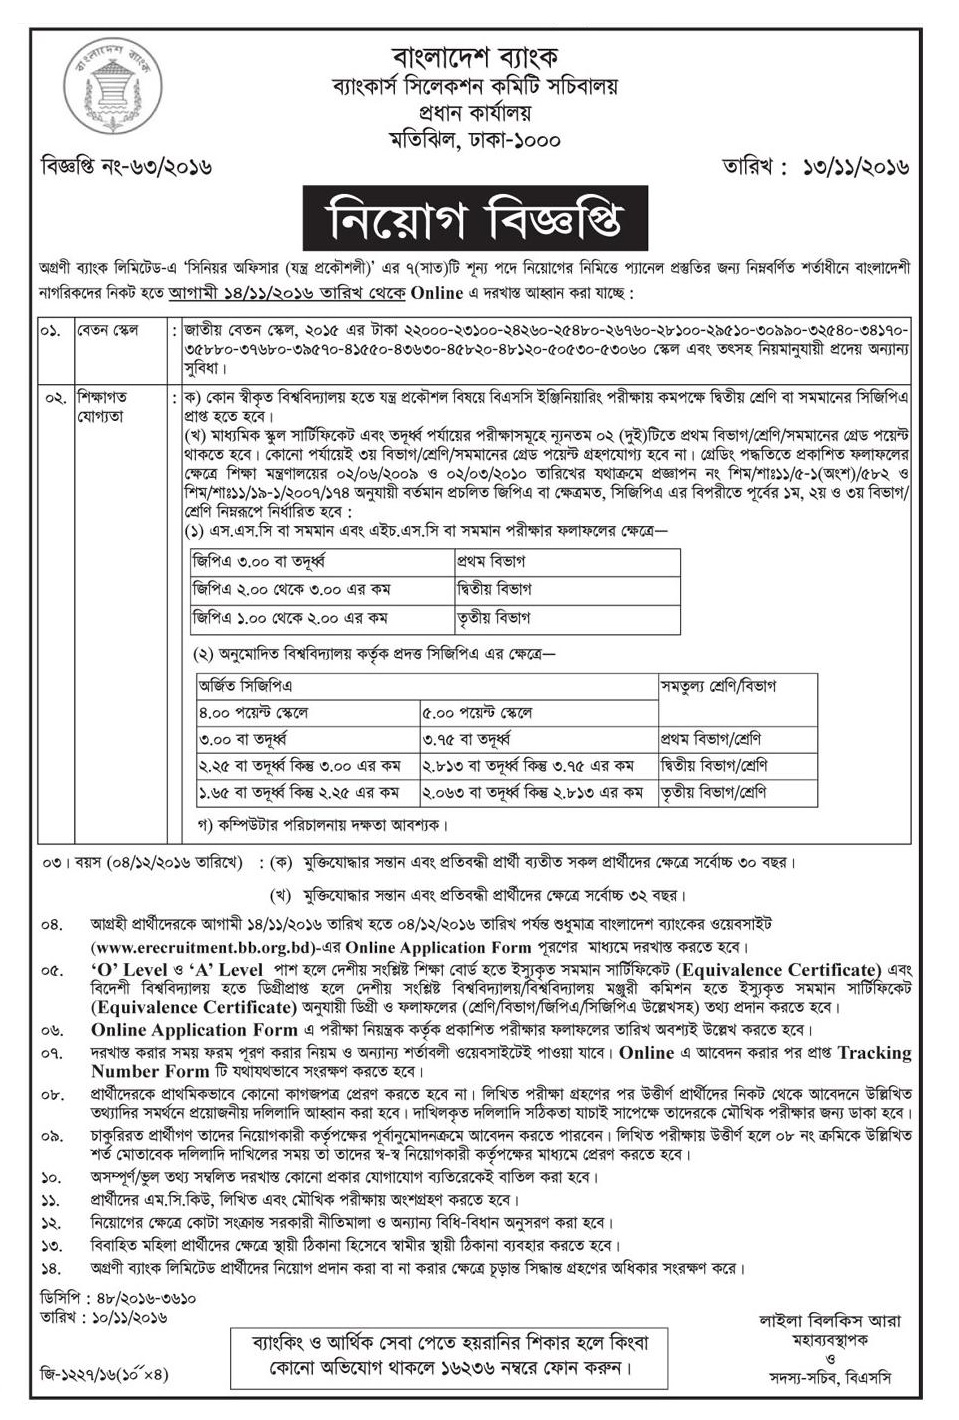 Bangladesh Bank job circular in November 2016